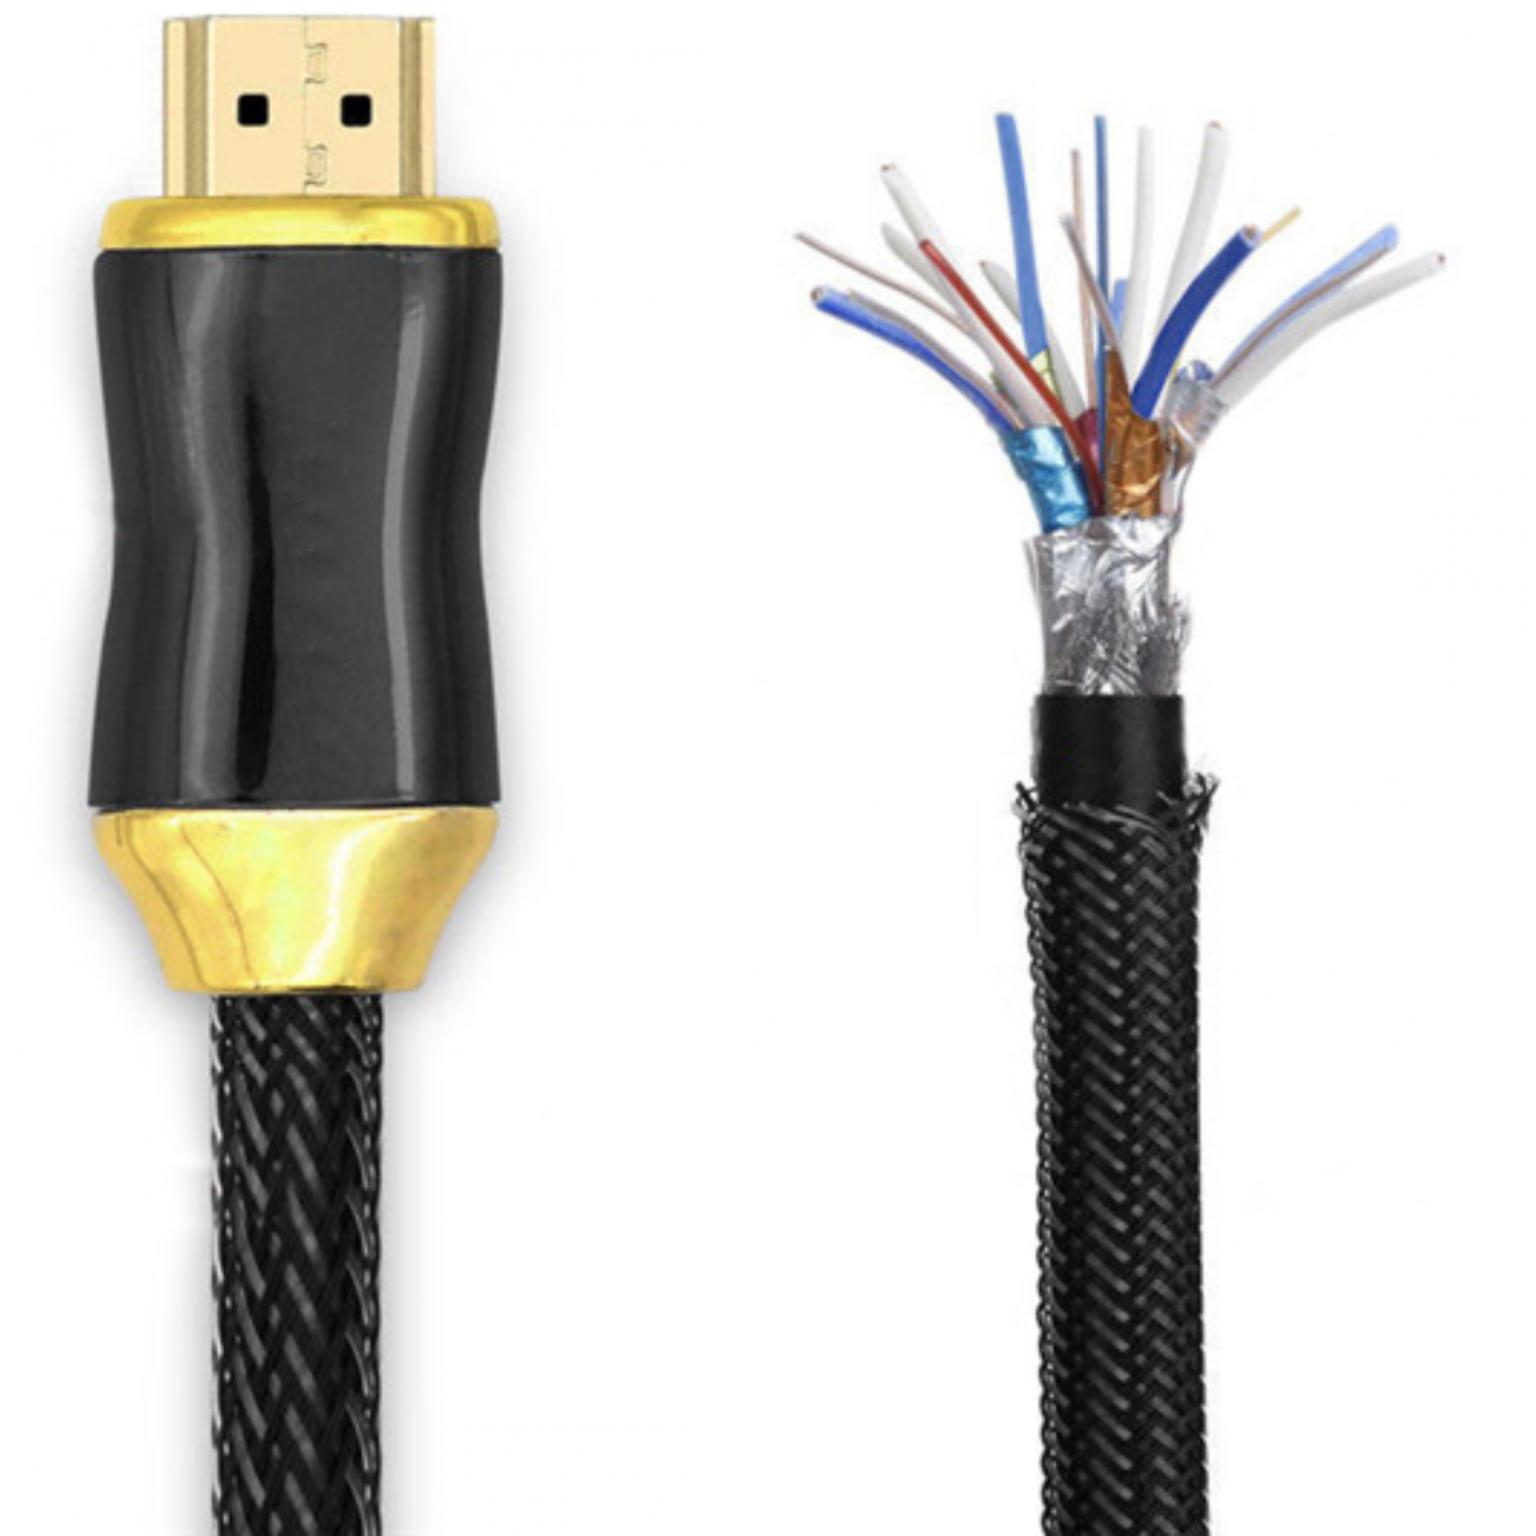 HDMI 2.0 kabel - Premium High Speed - gevlochten nylon